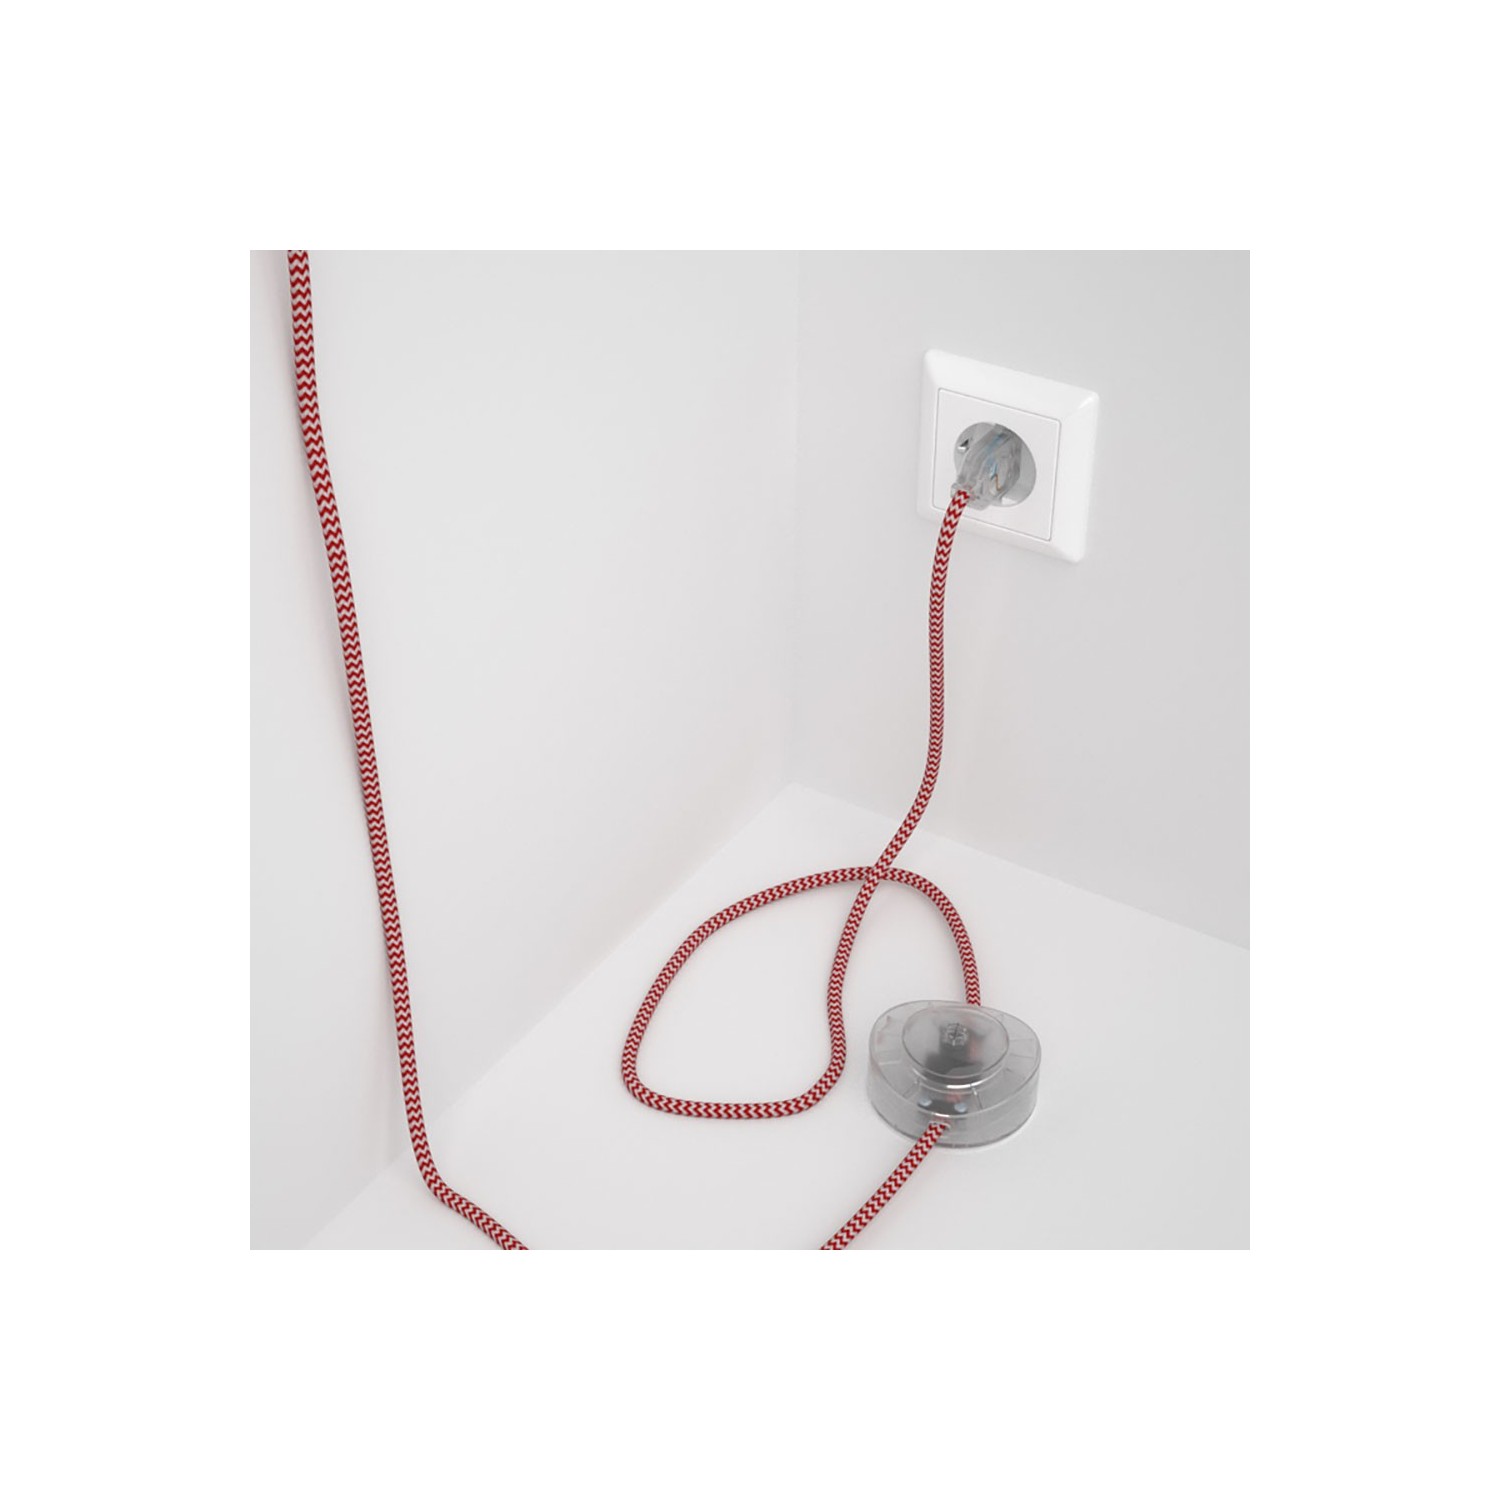 Strijkijzersnoer set RZ09 rood zigzag viscose 3 m. voor staande lamp met stekker en voetschakelaar.